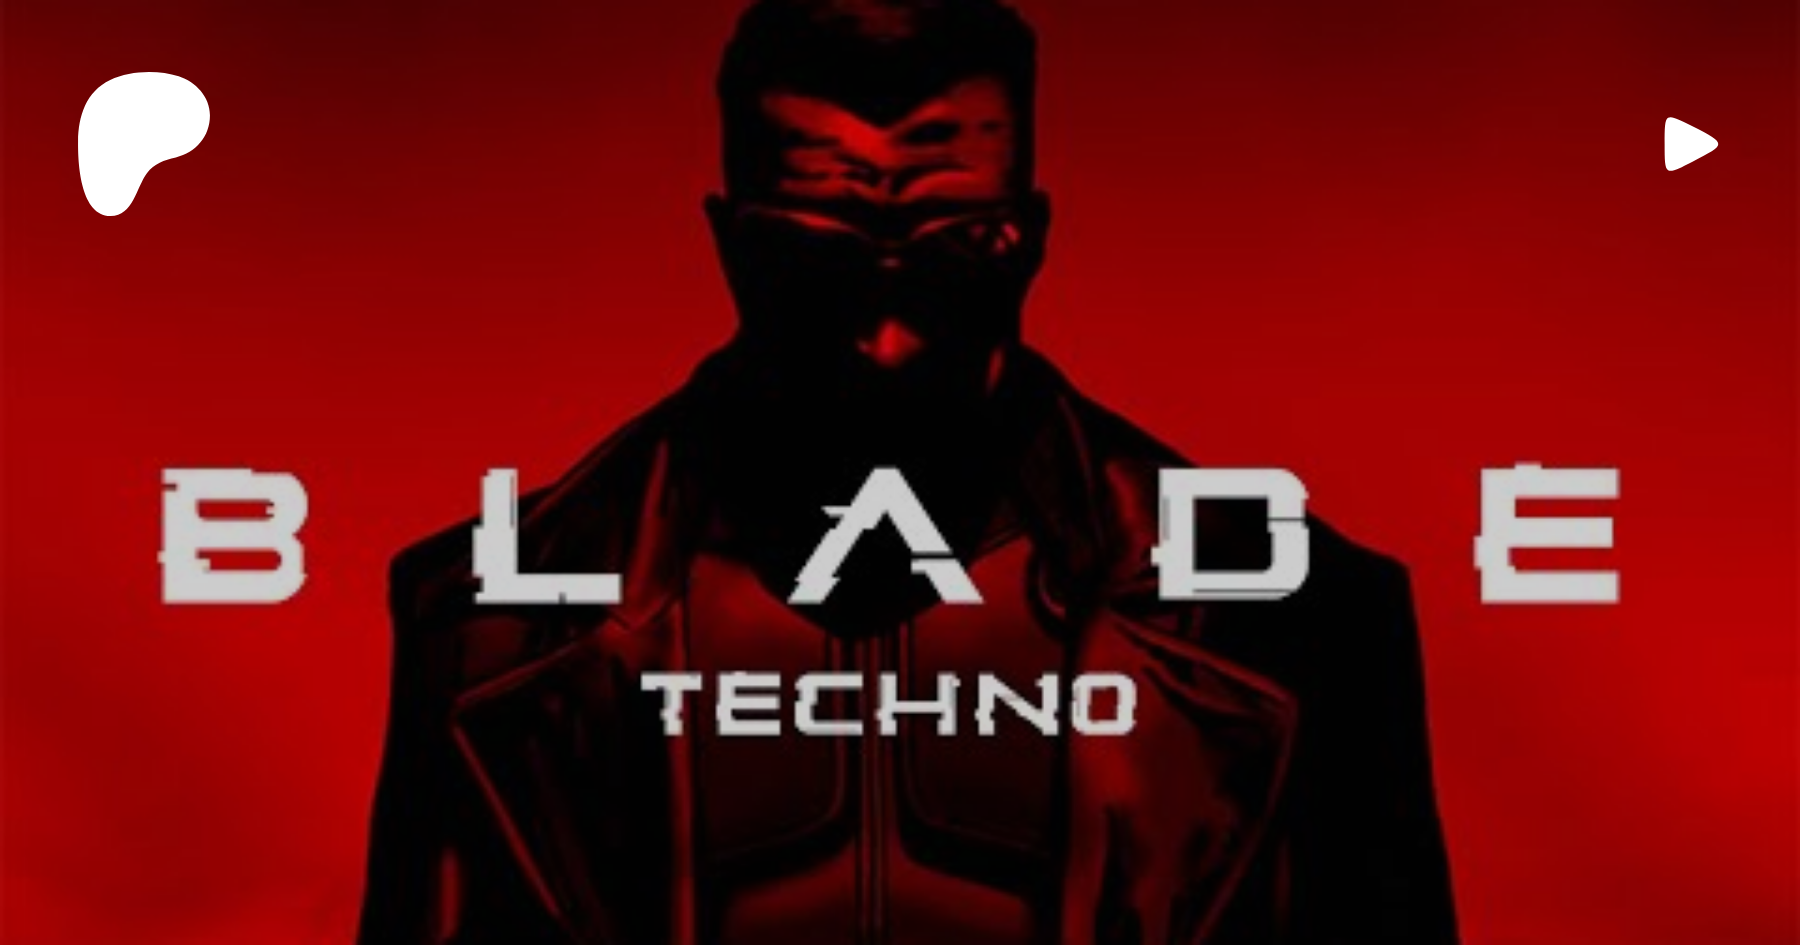 Dark HARD TECHNO 2021 Blade Techno Rave by RTTWLR 